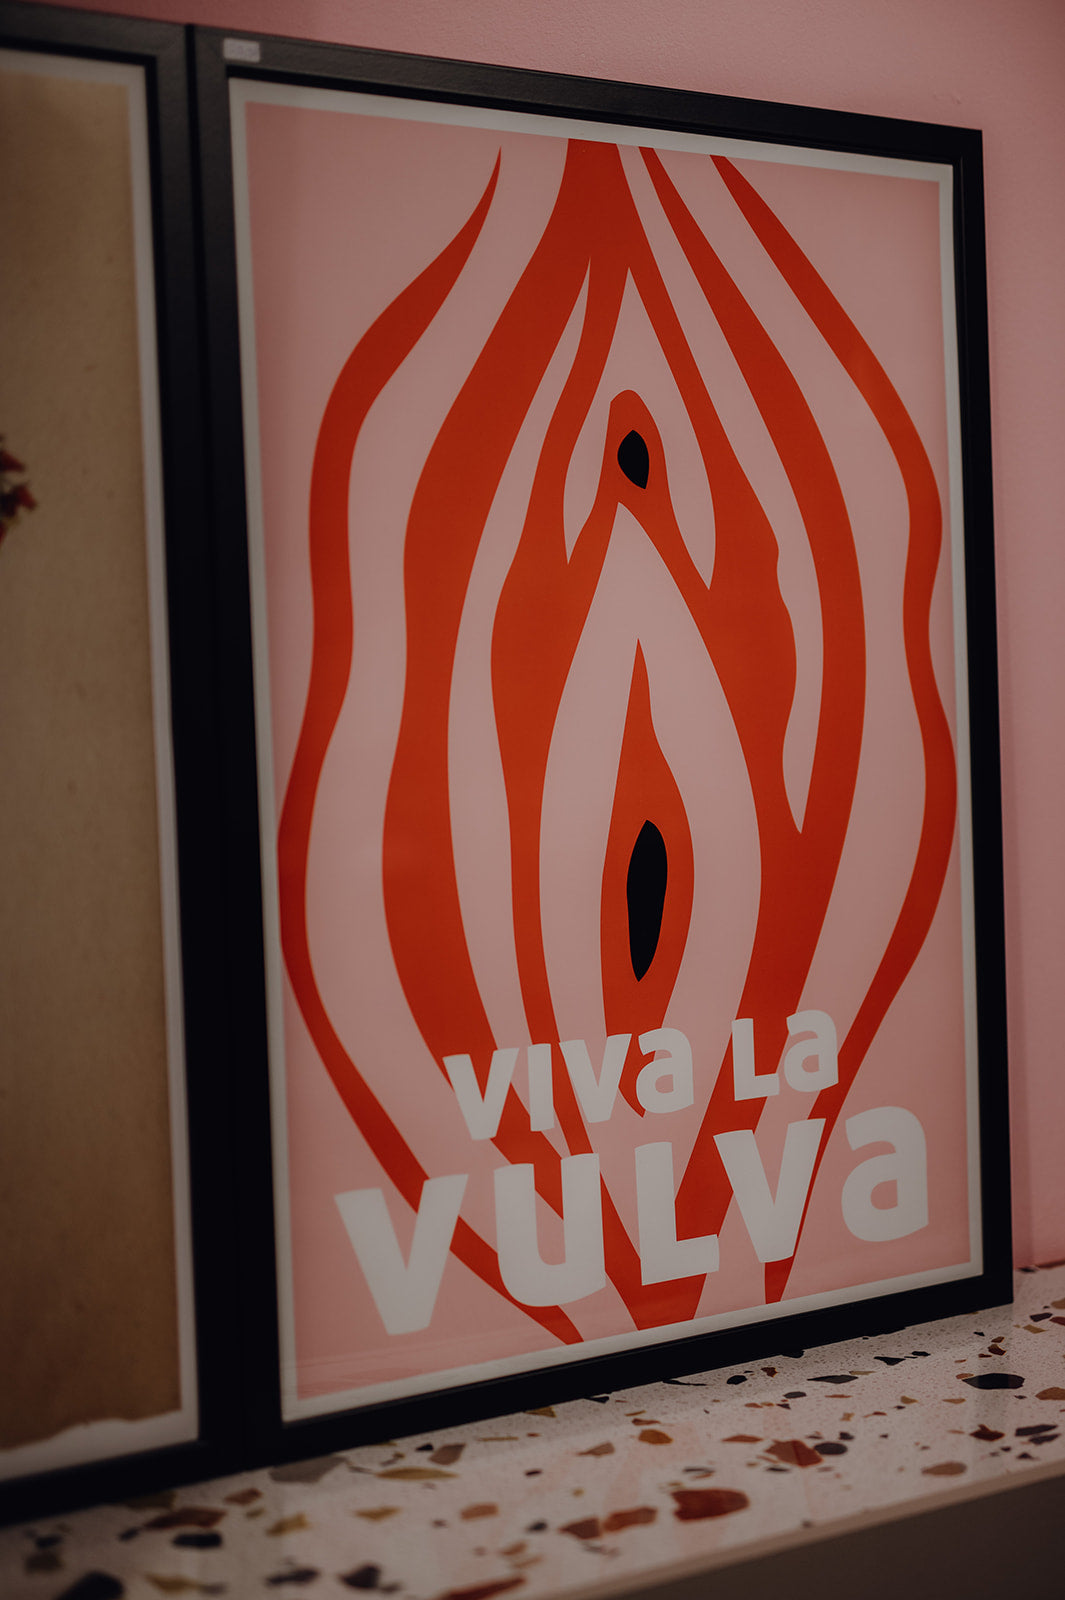 Poster - "Viva la Vulva"